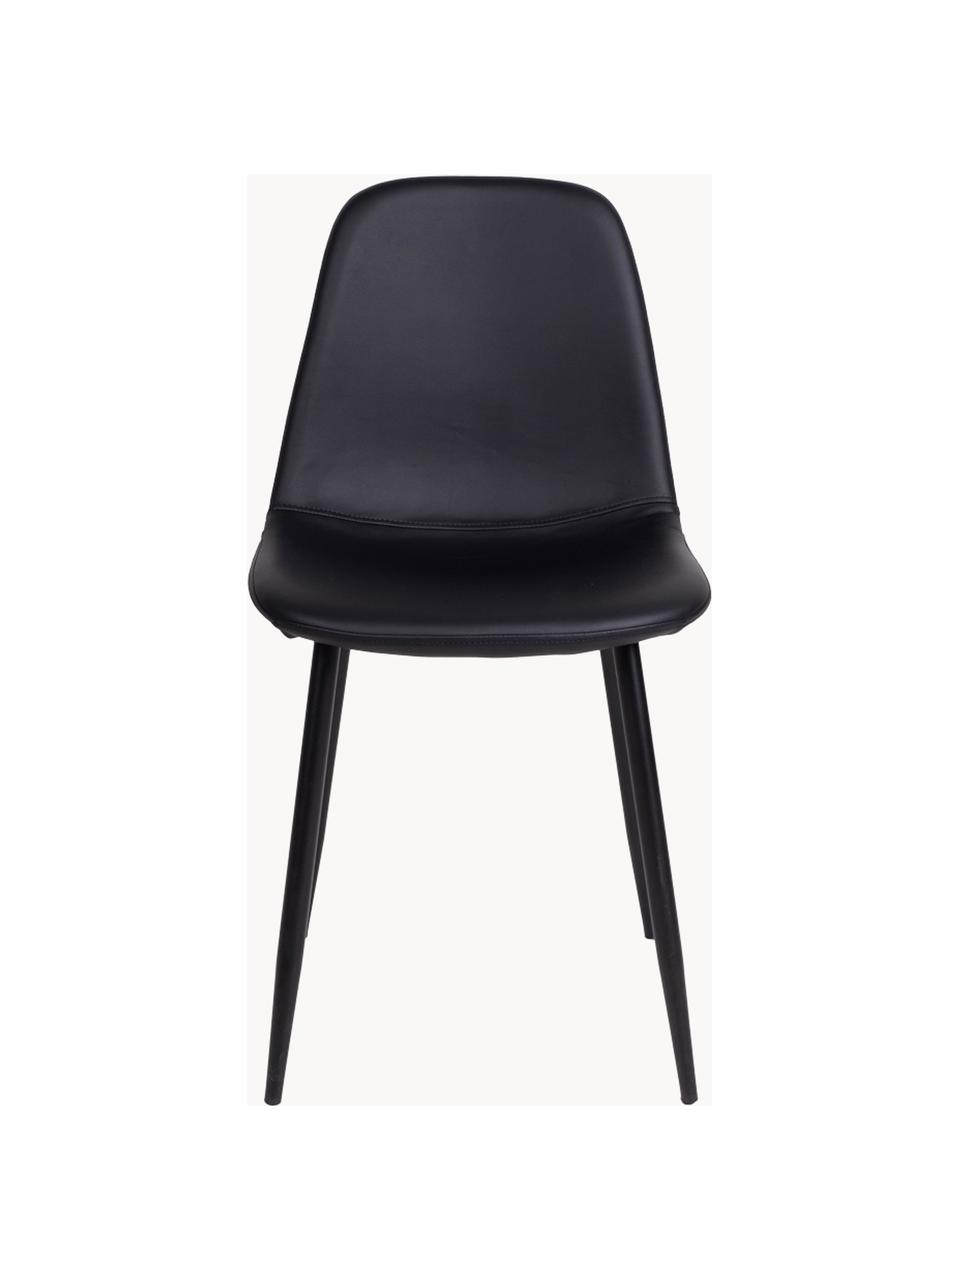 Krzesło tapicerowane ze sztucznej skóry Stockholm, Tapicerka: sztuczna skóra Dzięki tka, Nogi: metal lakierowany, Czarna sztuczna skóra, czarny, S 50 x G 47 cm